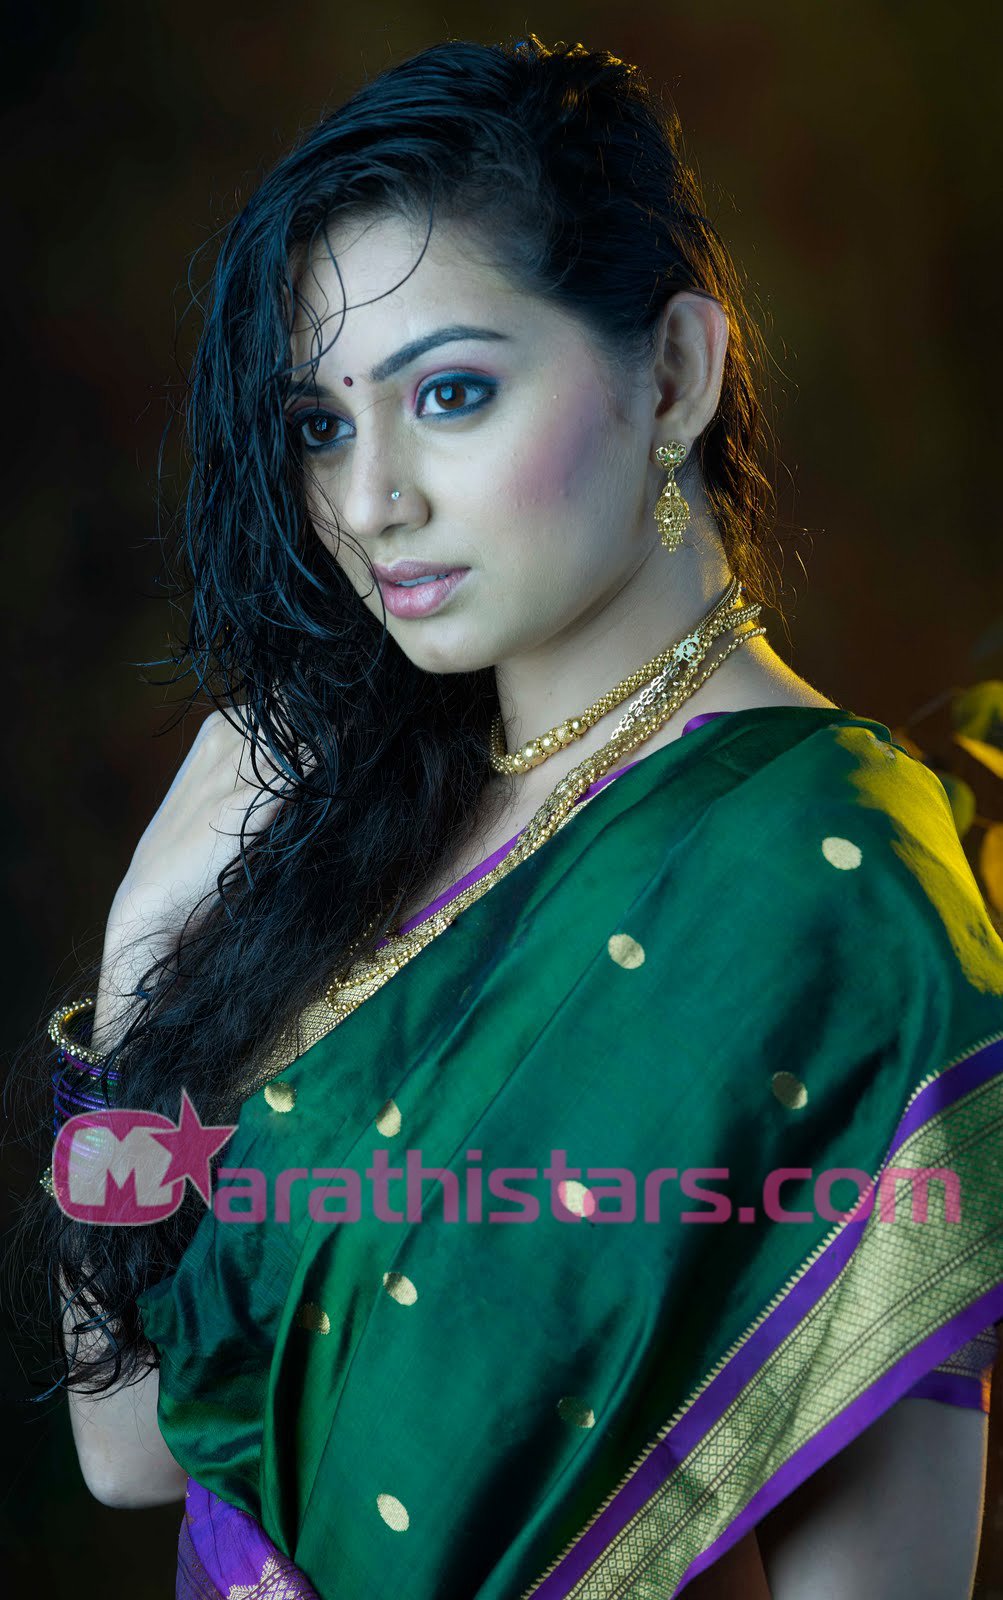 Marathi Actress Photos Wallpaper Image Biography Wiki